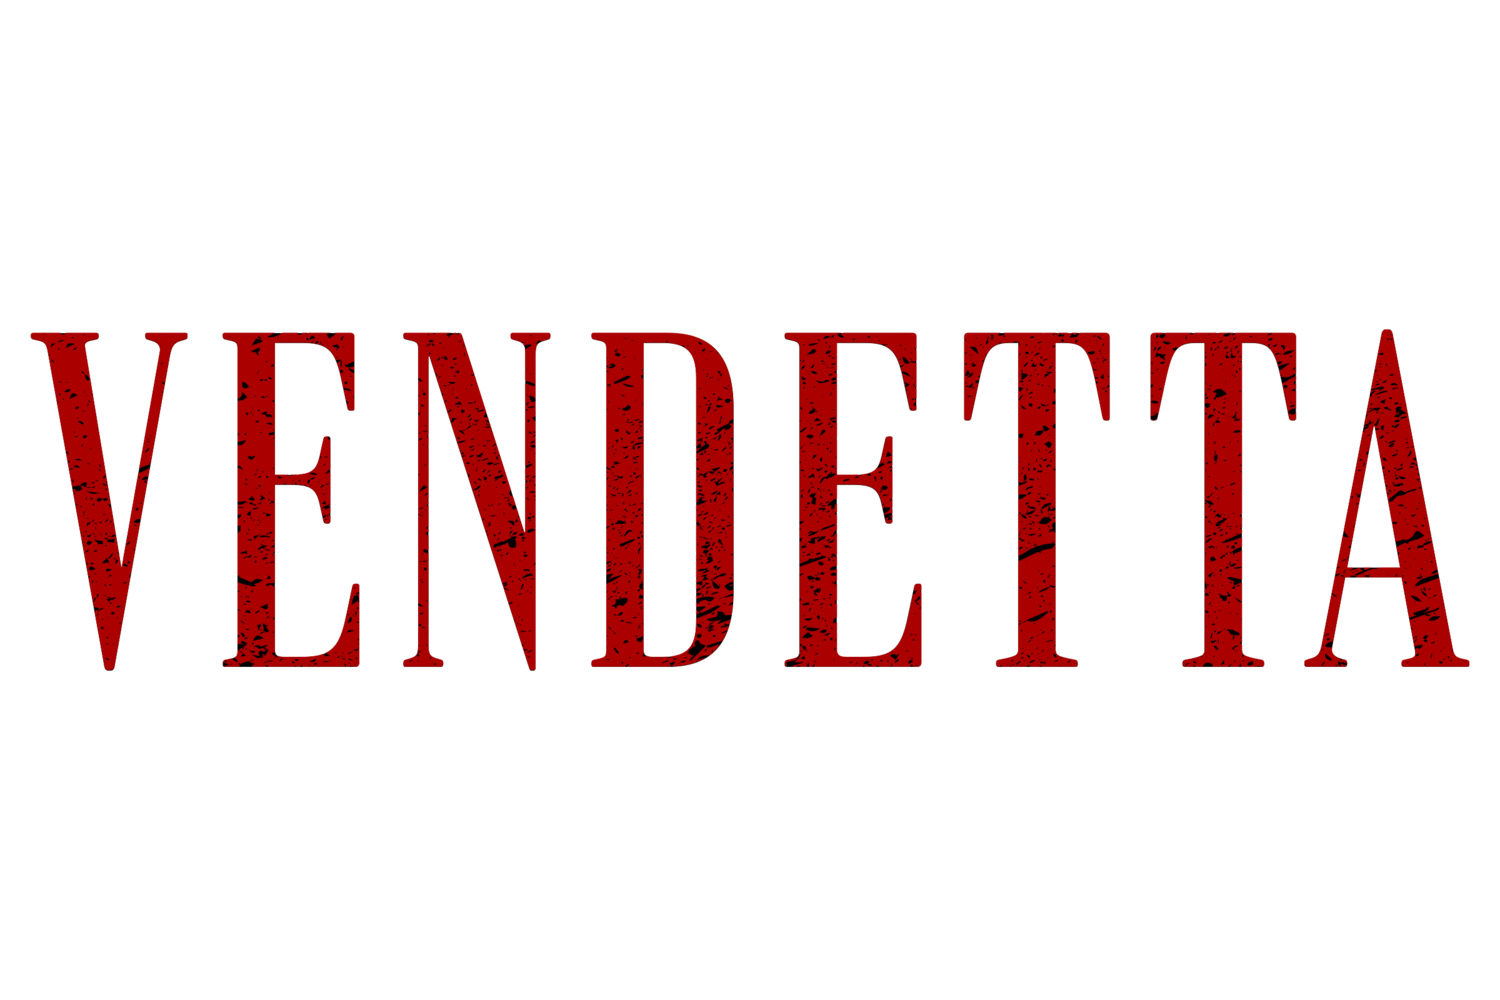 Joshua Vendetta Nash